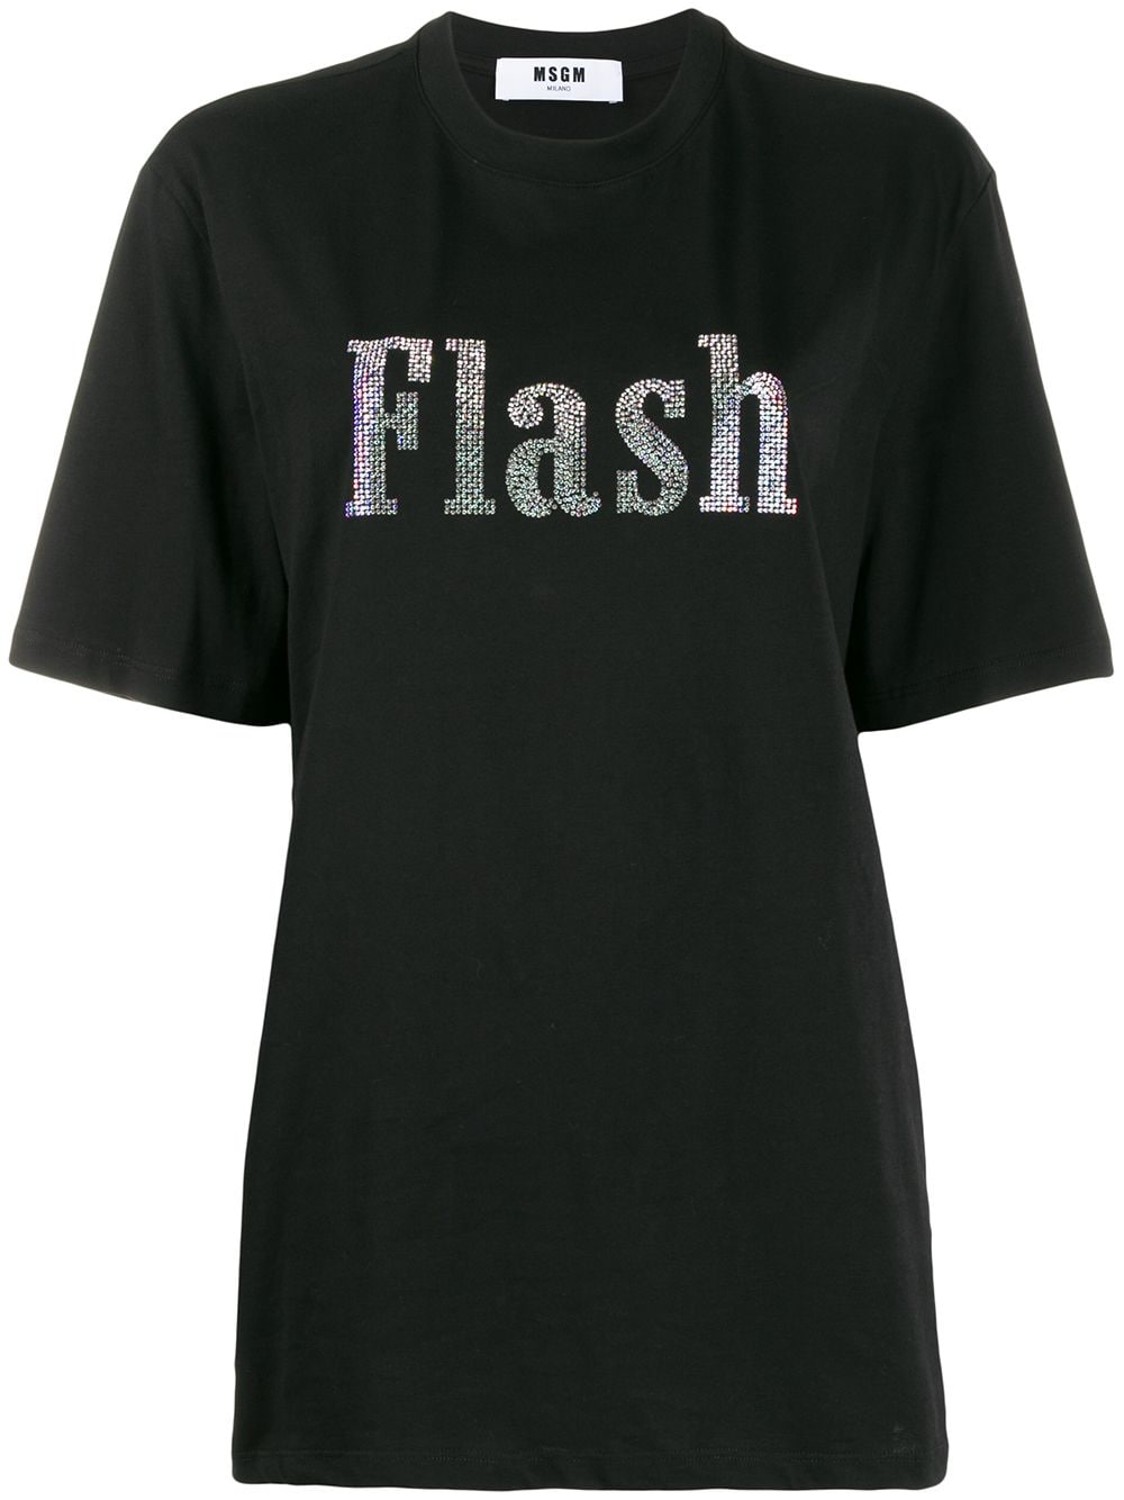 shop MSGM Sales T-shirts: T-shirt MSGM, classico fit, manica corta, girocollo, nera, scritta " Flash" in swarovski.

Composizione: 100% cotone. number 1588